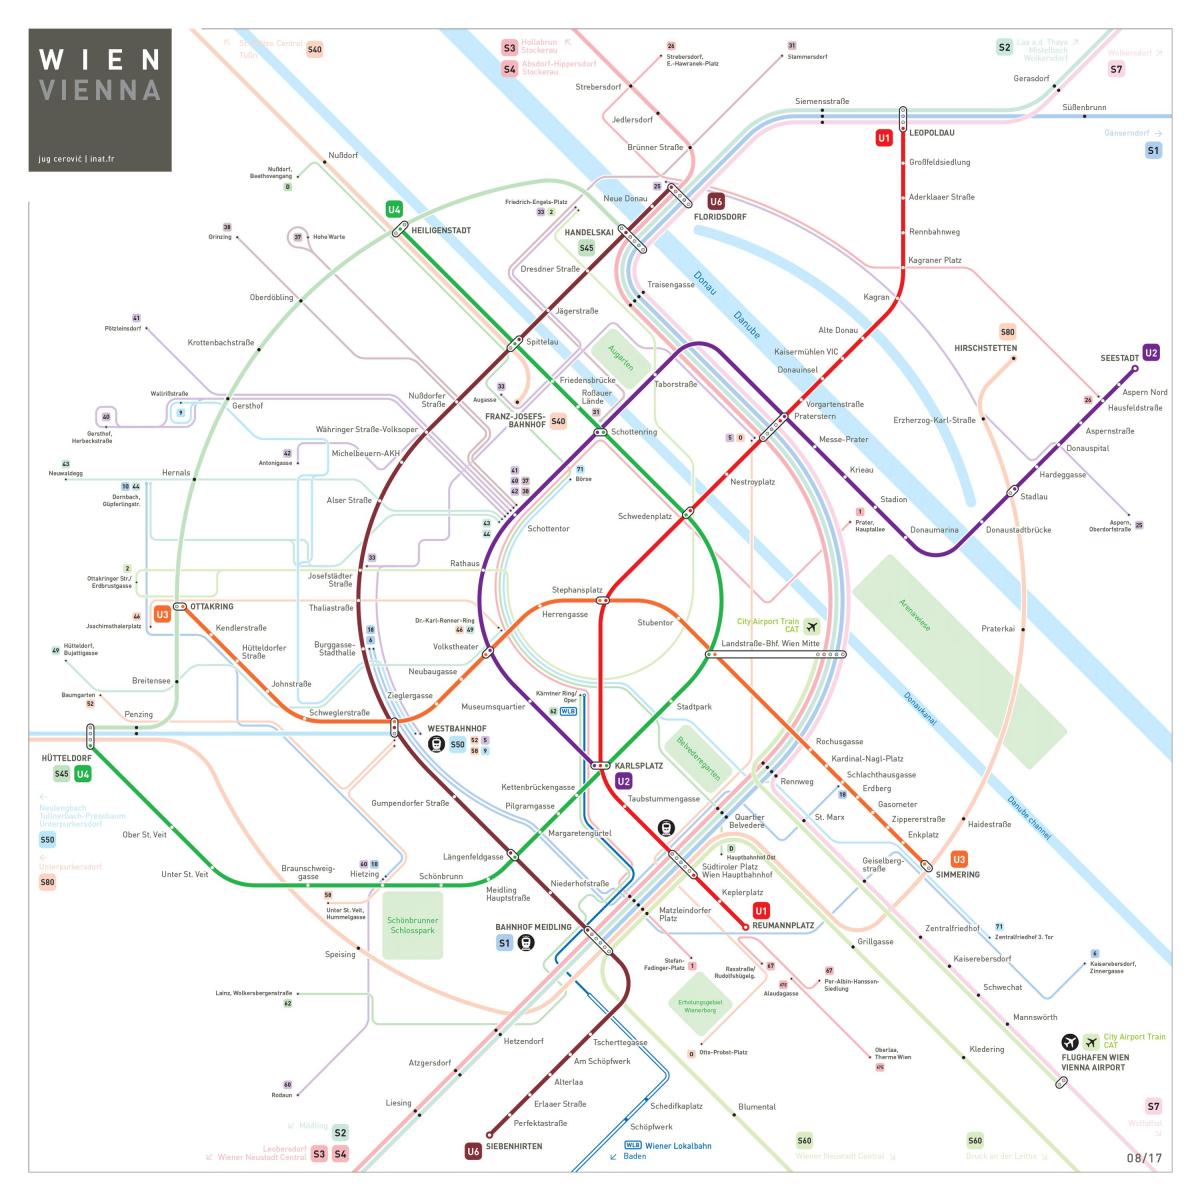 Mapa у4 Wiedeń